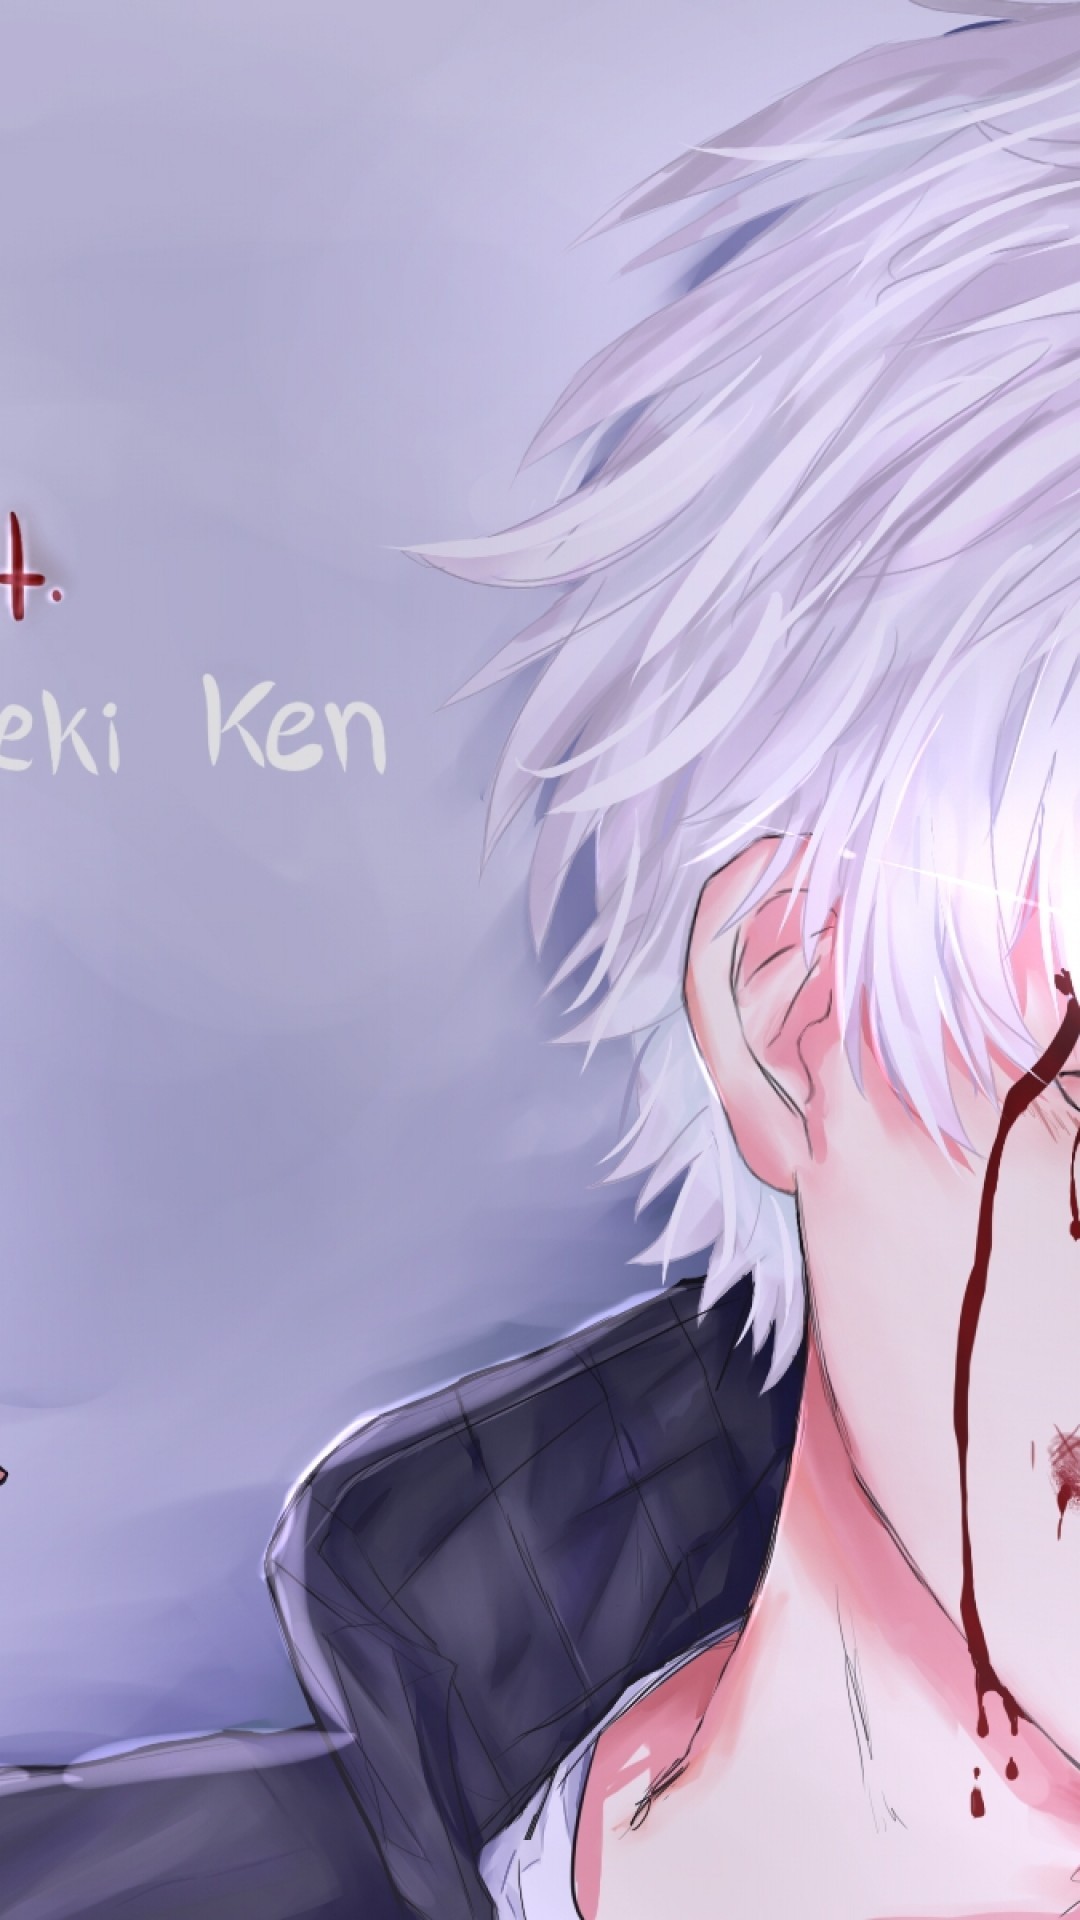 Tokyo Ghoul, Kaneki Ken, White Hair, Red Eye - Anime Wallpaper Kaneki Ken -  1080x1920 Wallpaper 